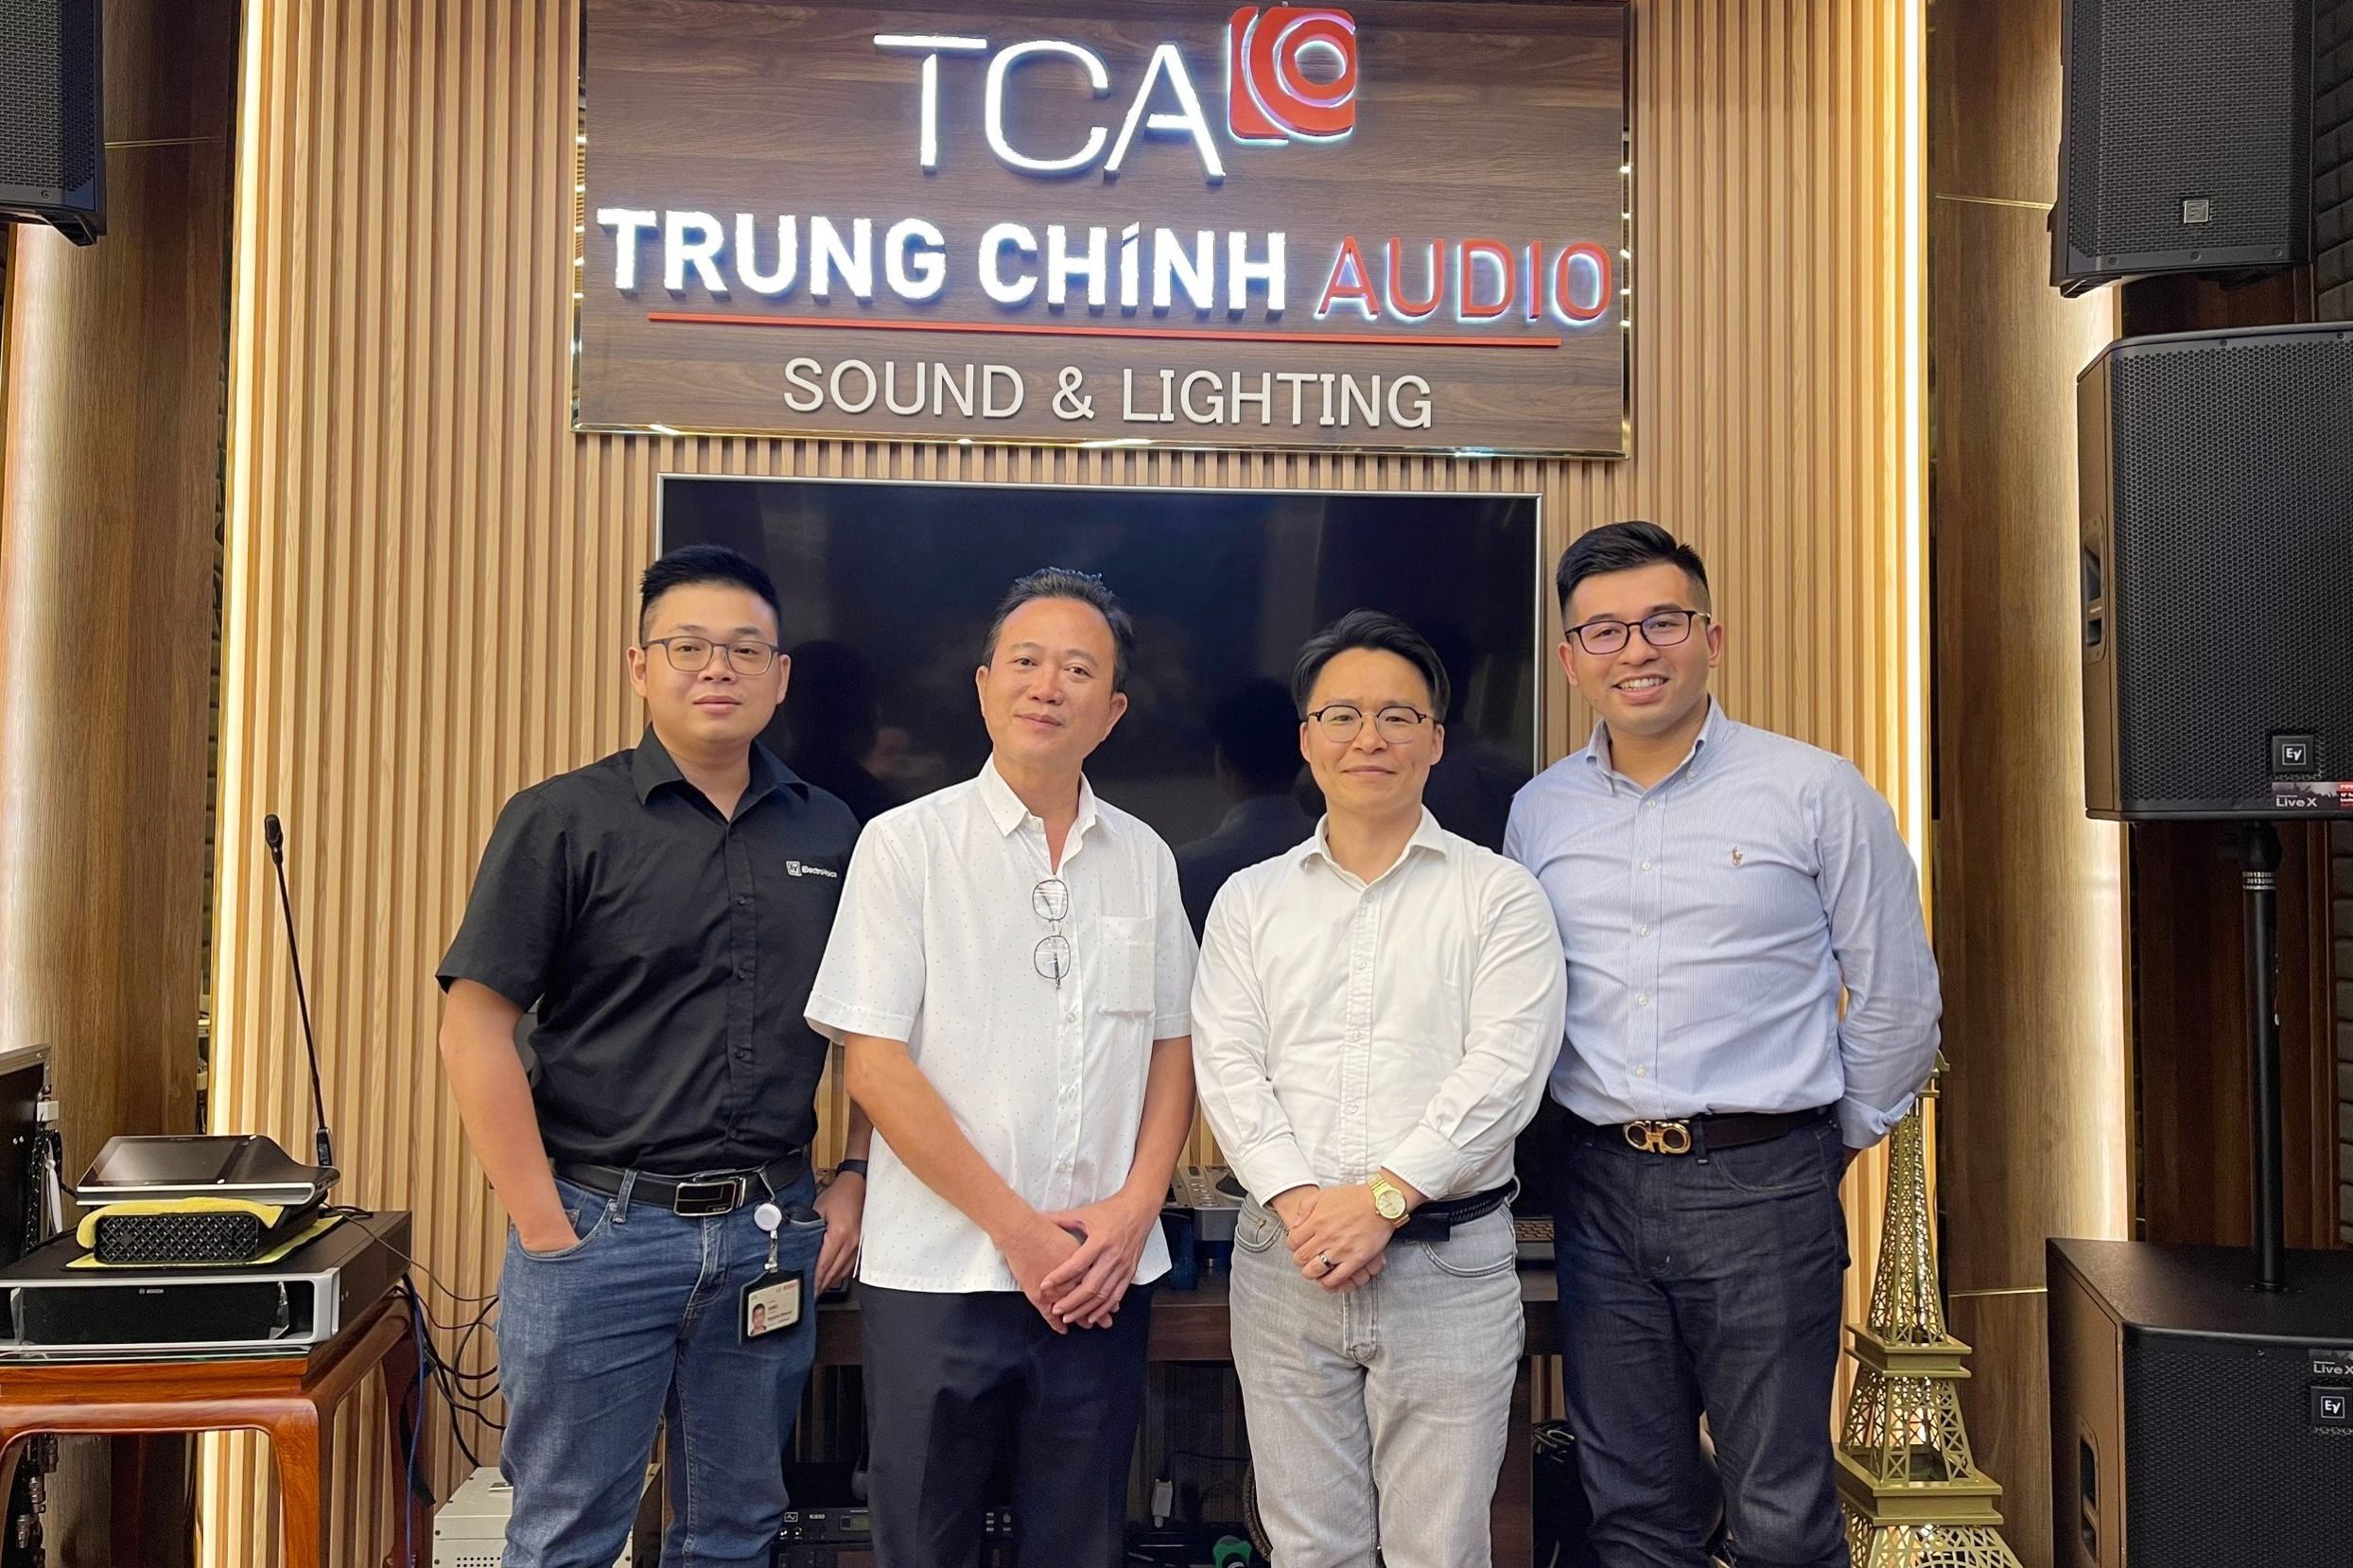 Hình ảnh kỷ niệm sự kiện hợp tác giữa Bosch & TCA tại TP. Hồ Chí Minh